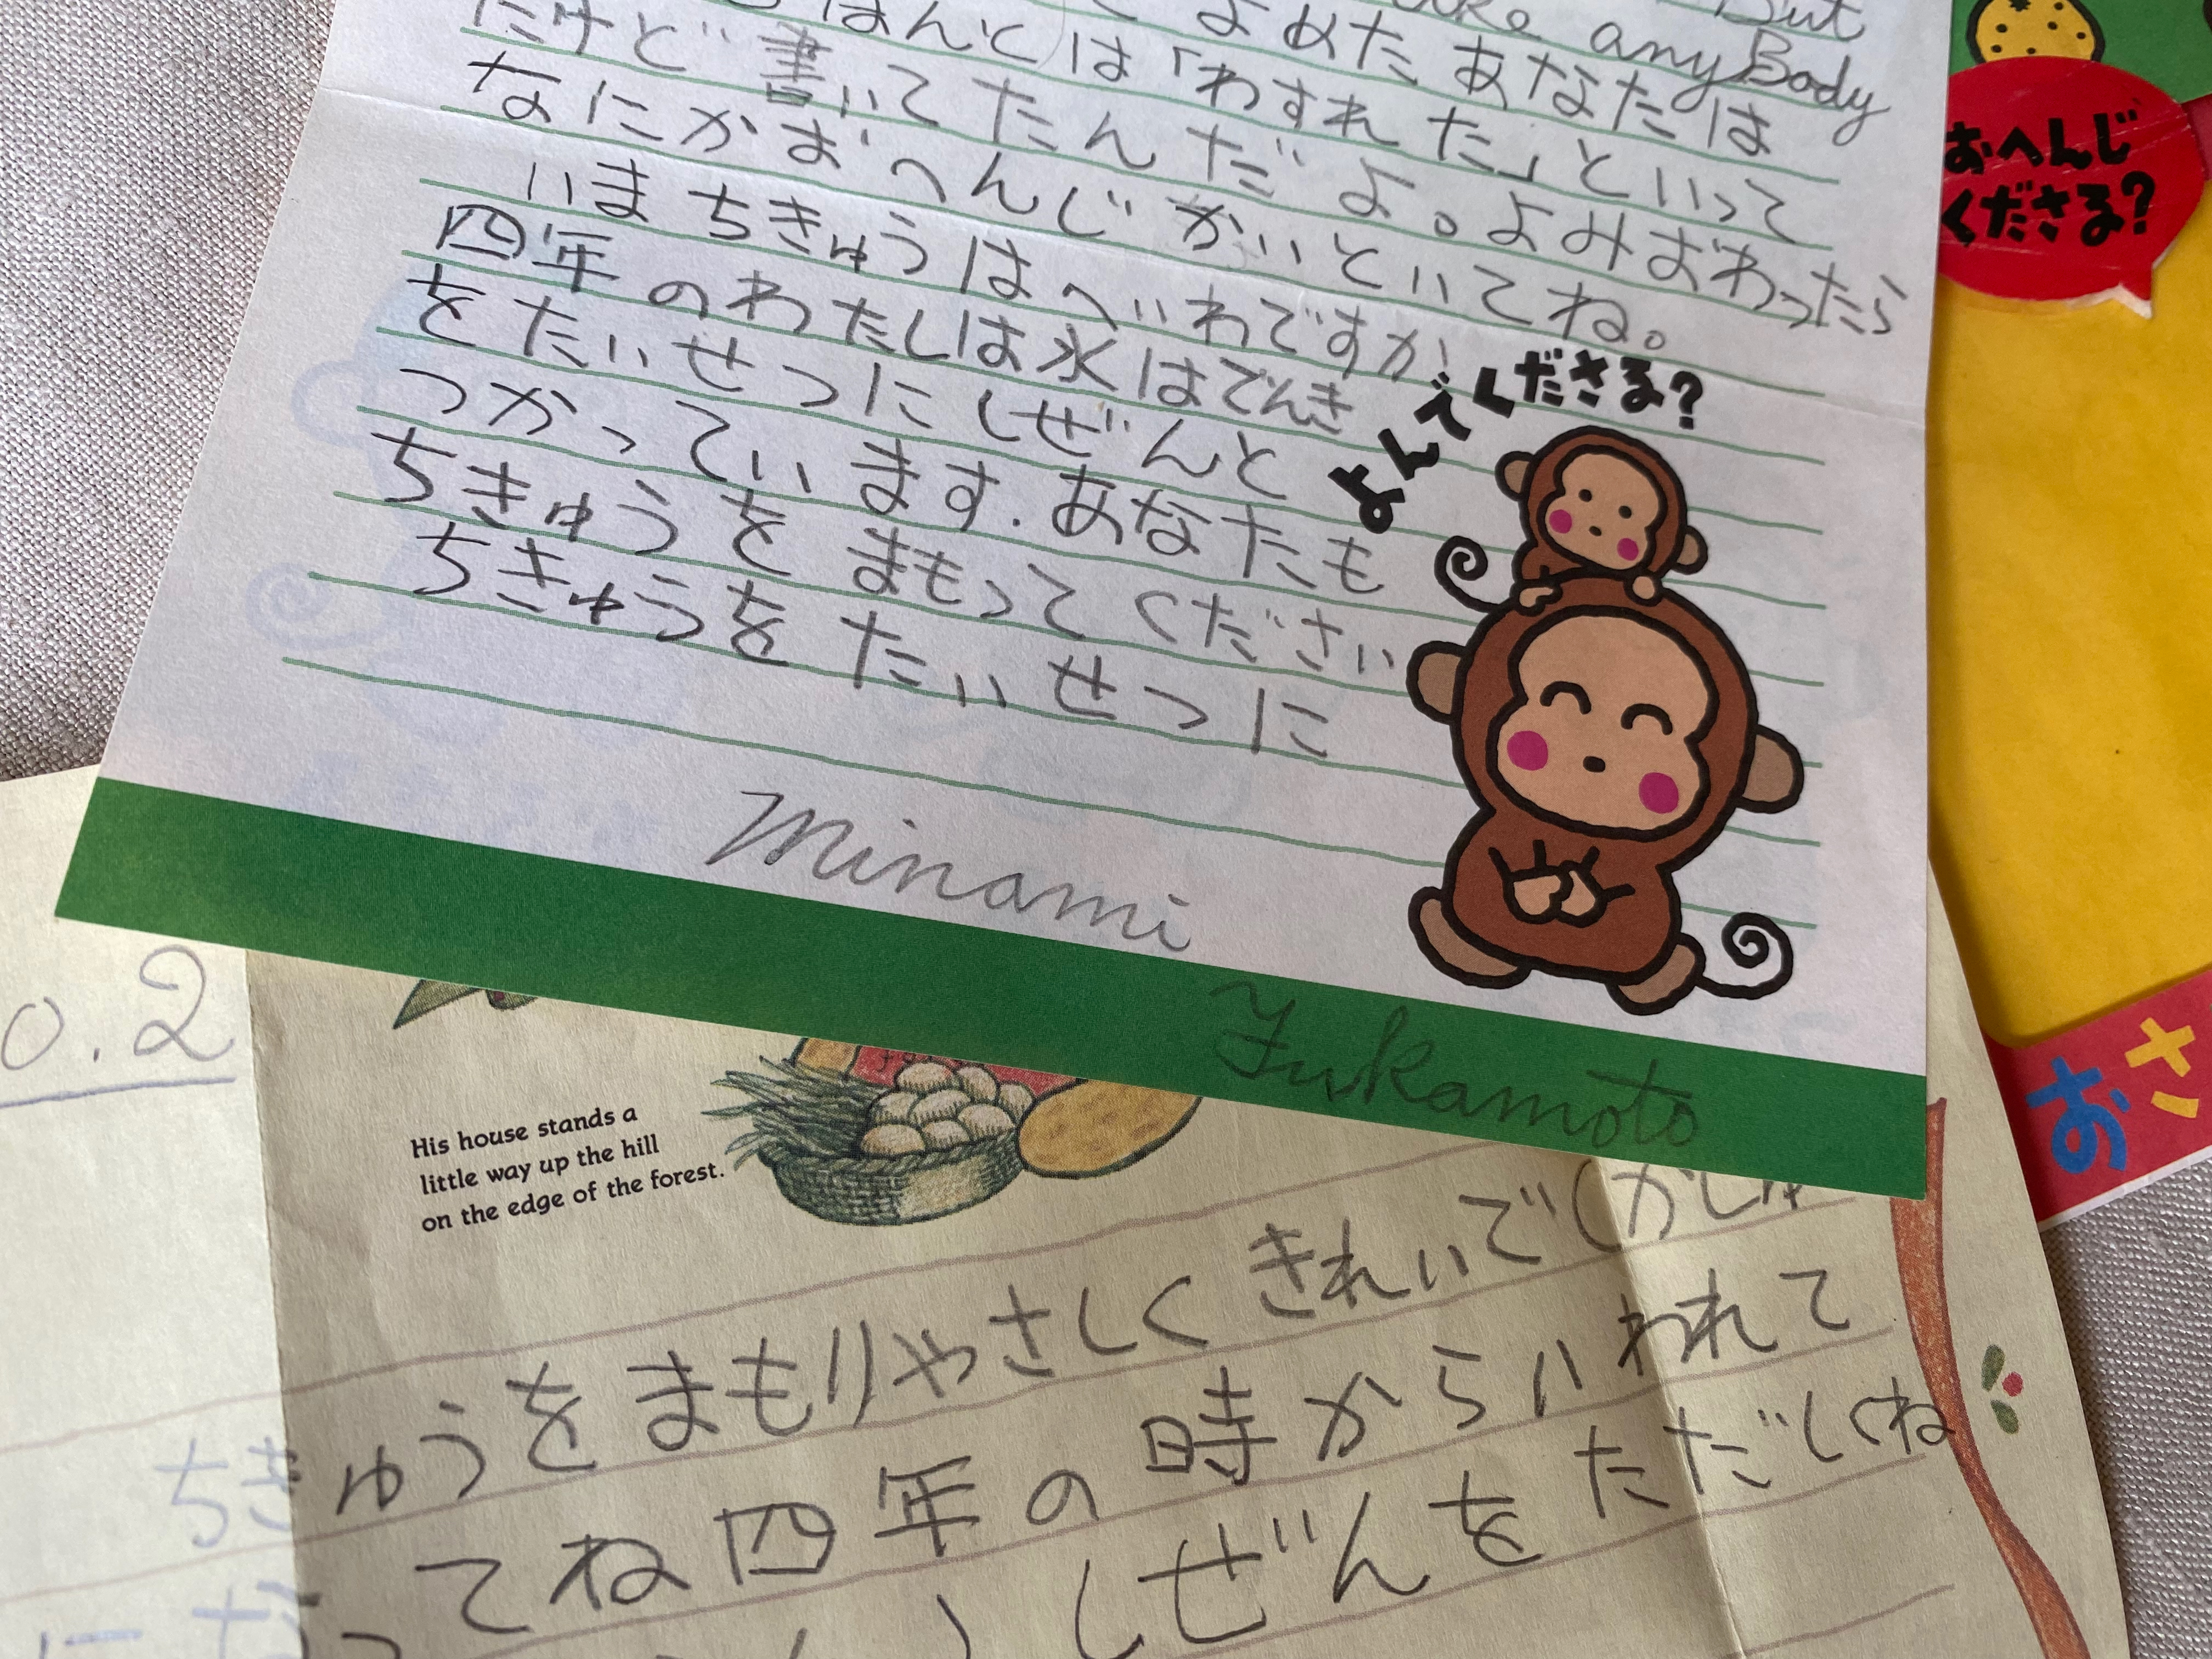 深本さんが小学4年生のとき、20歳になった自分宛てに書いた手紙